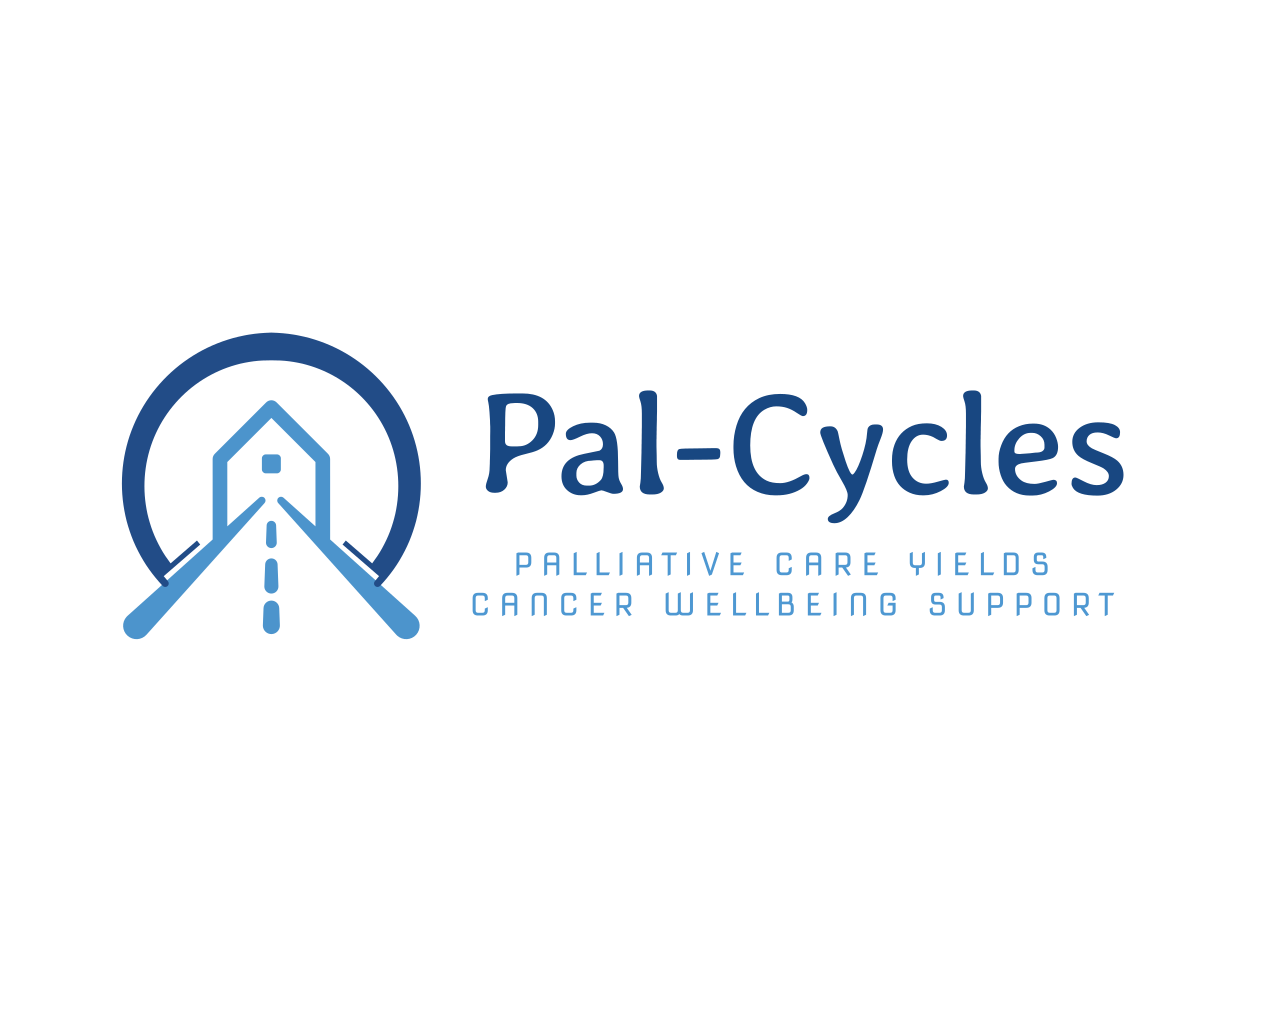 pal-cycles logo